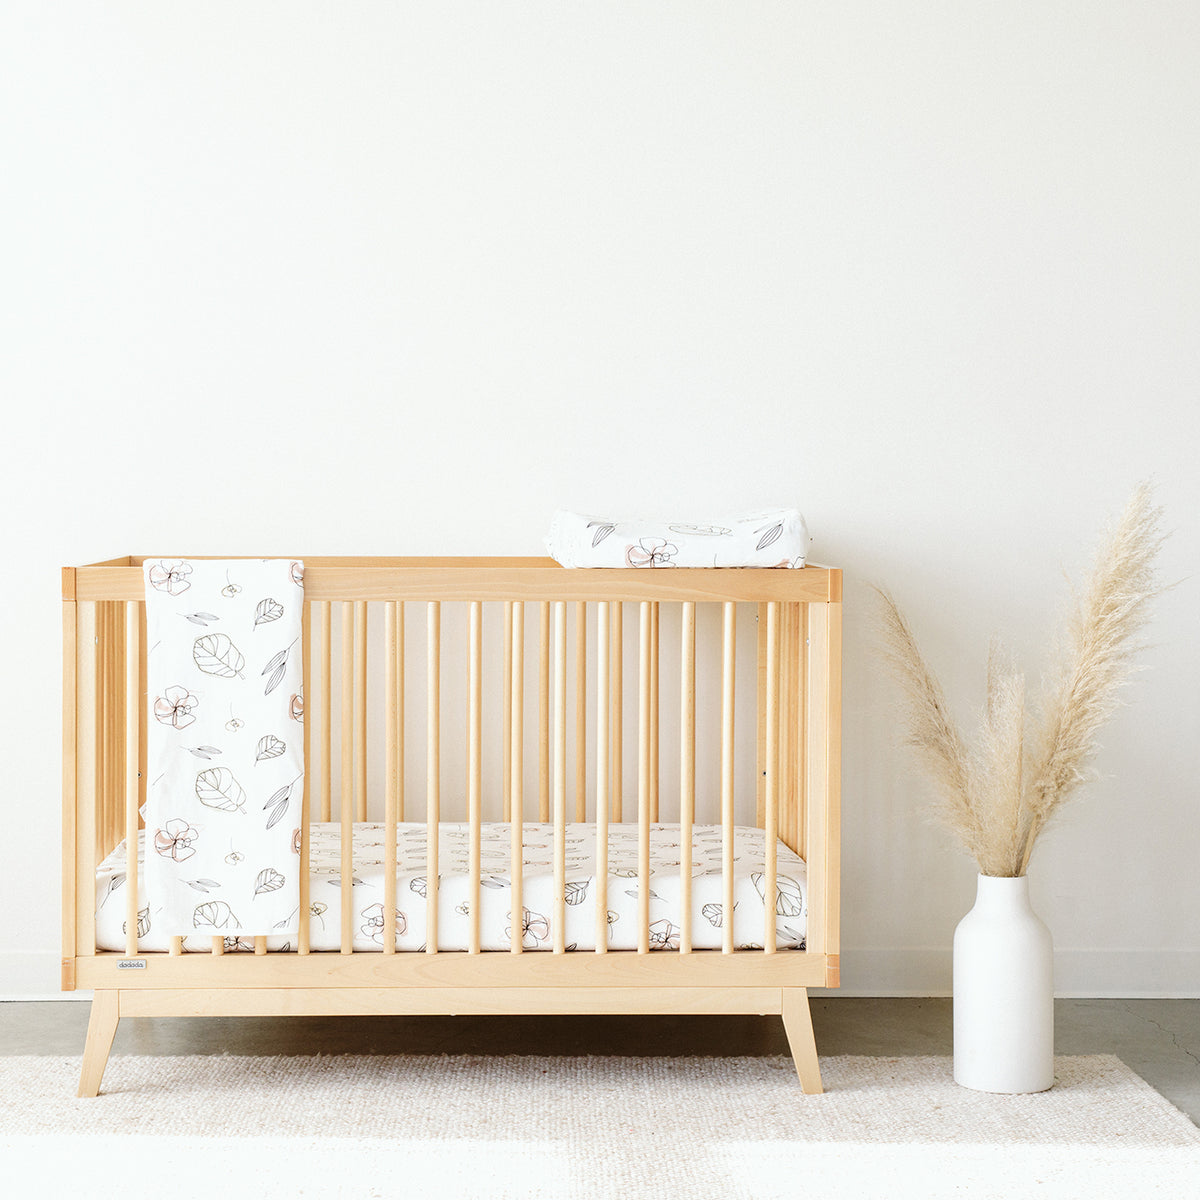 Cuna Para Bebe 4 en 1 Infant Convertible Modern Baby Crib Black/Natural NEW